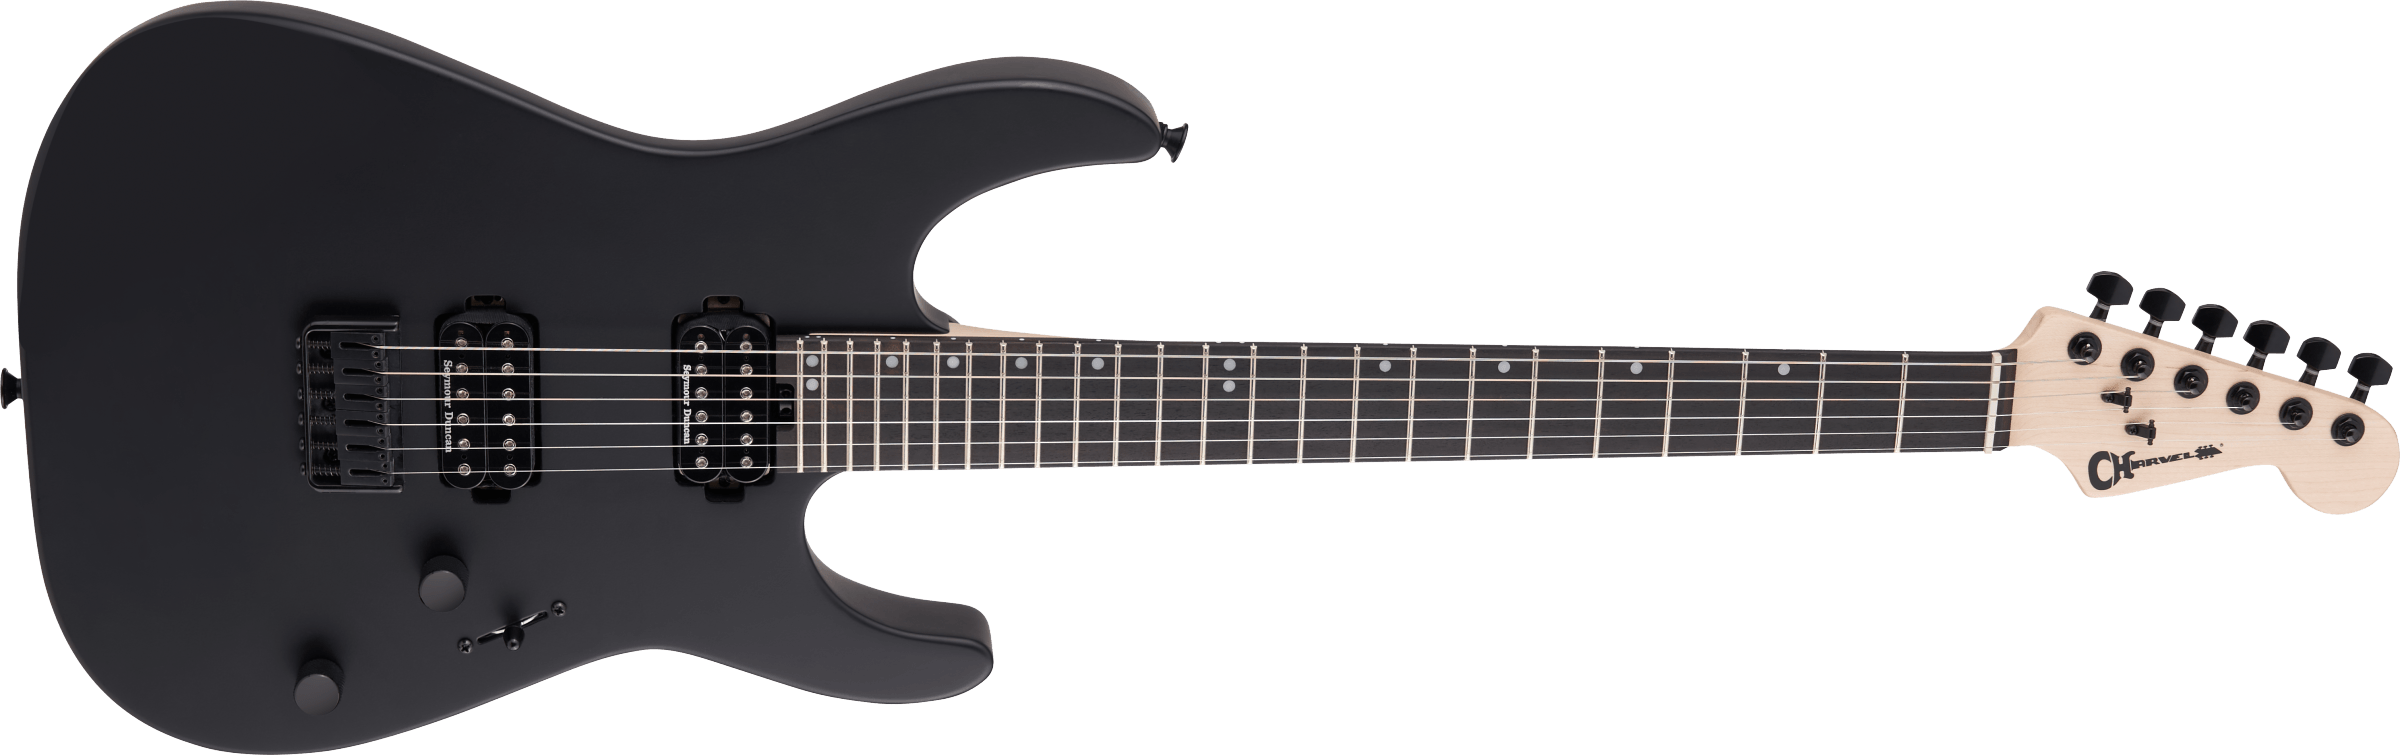 Charvel Dinky Dk24 Hh Ht E Pro-mod 2h Seymour Duncan Eb - Satin Black - Guitarra eléctrica con forma de str. - Variation 2